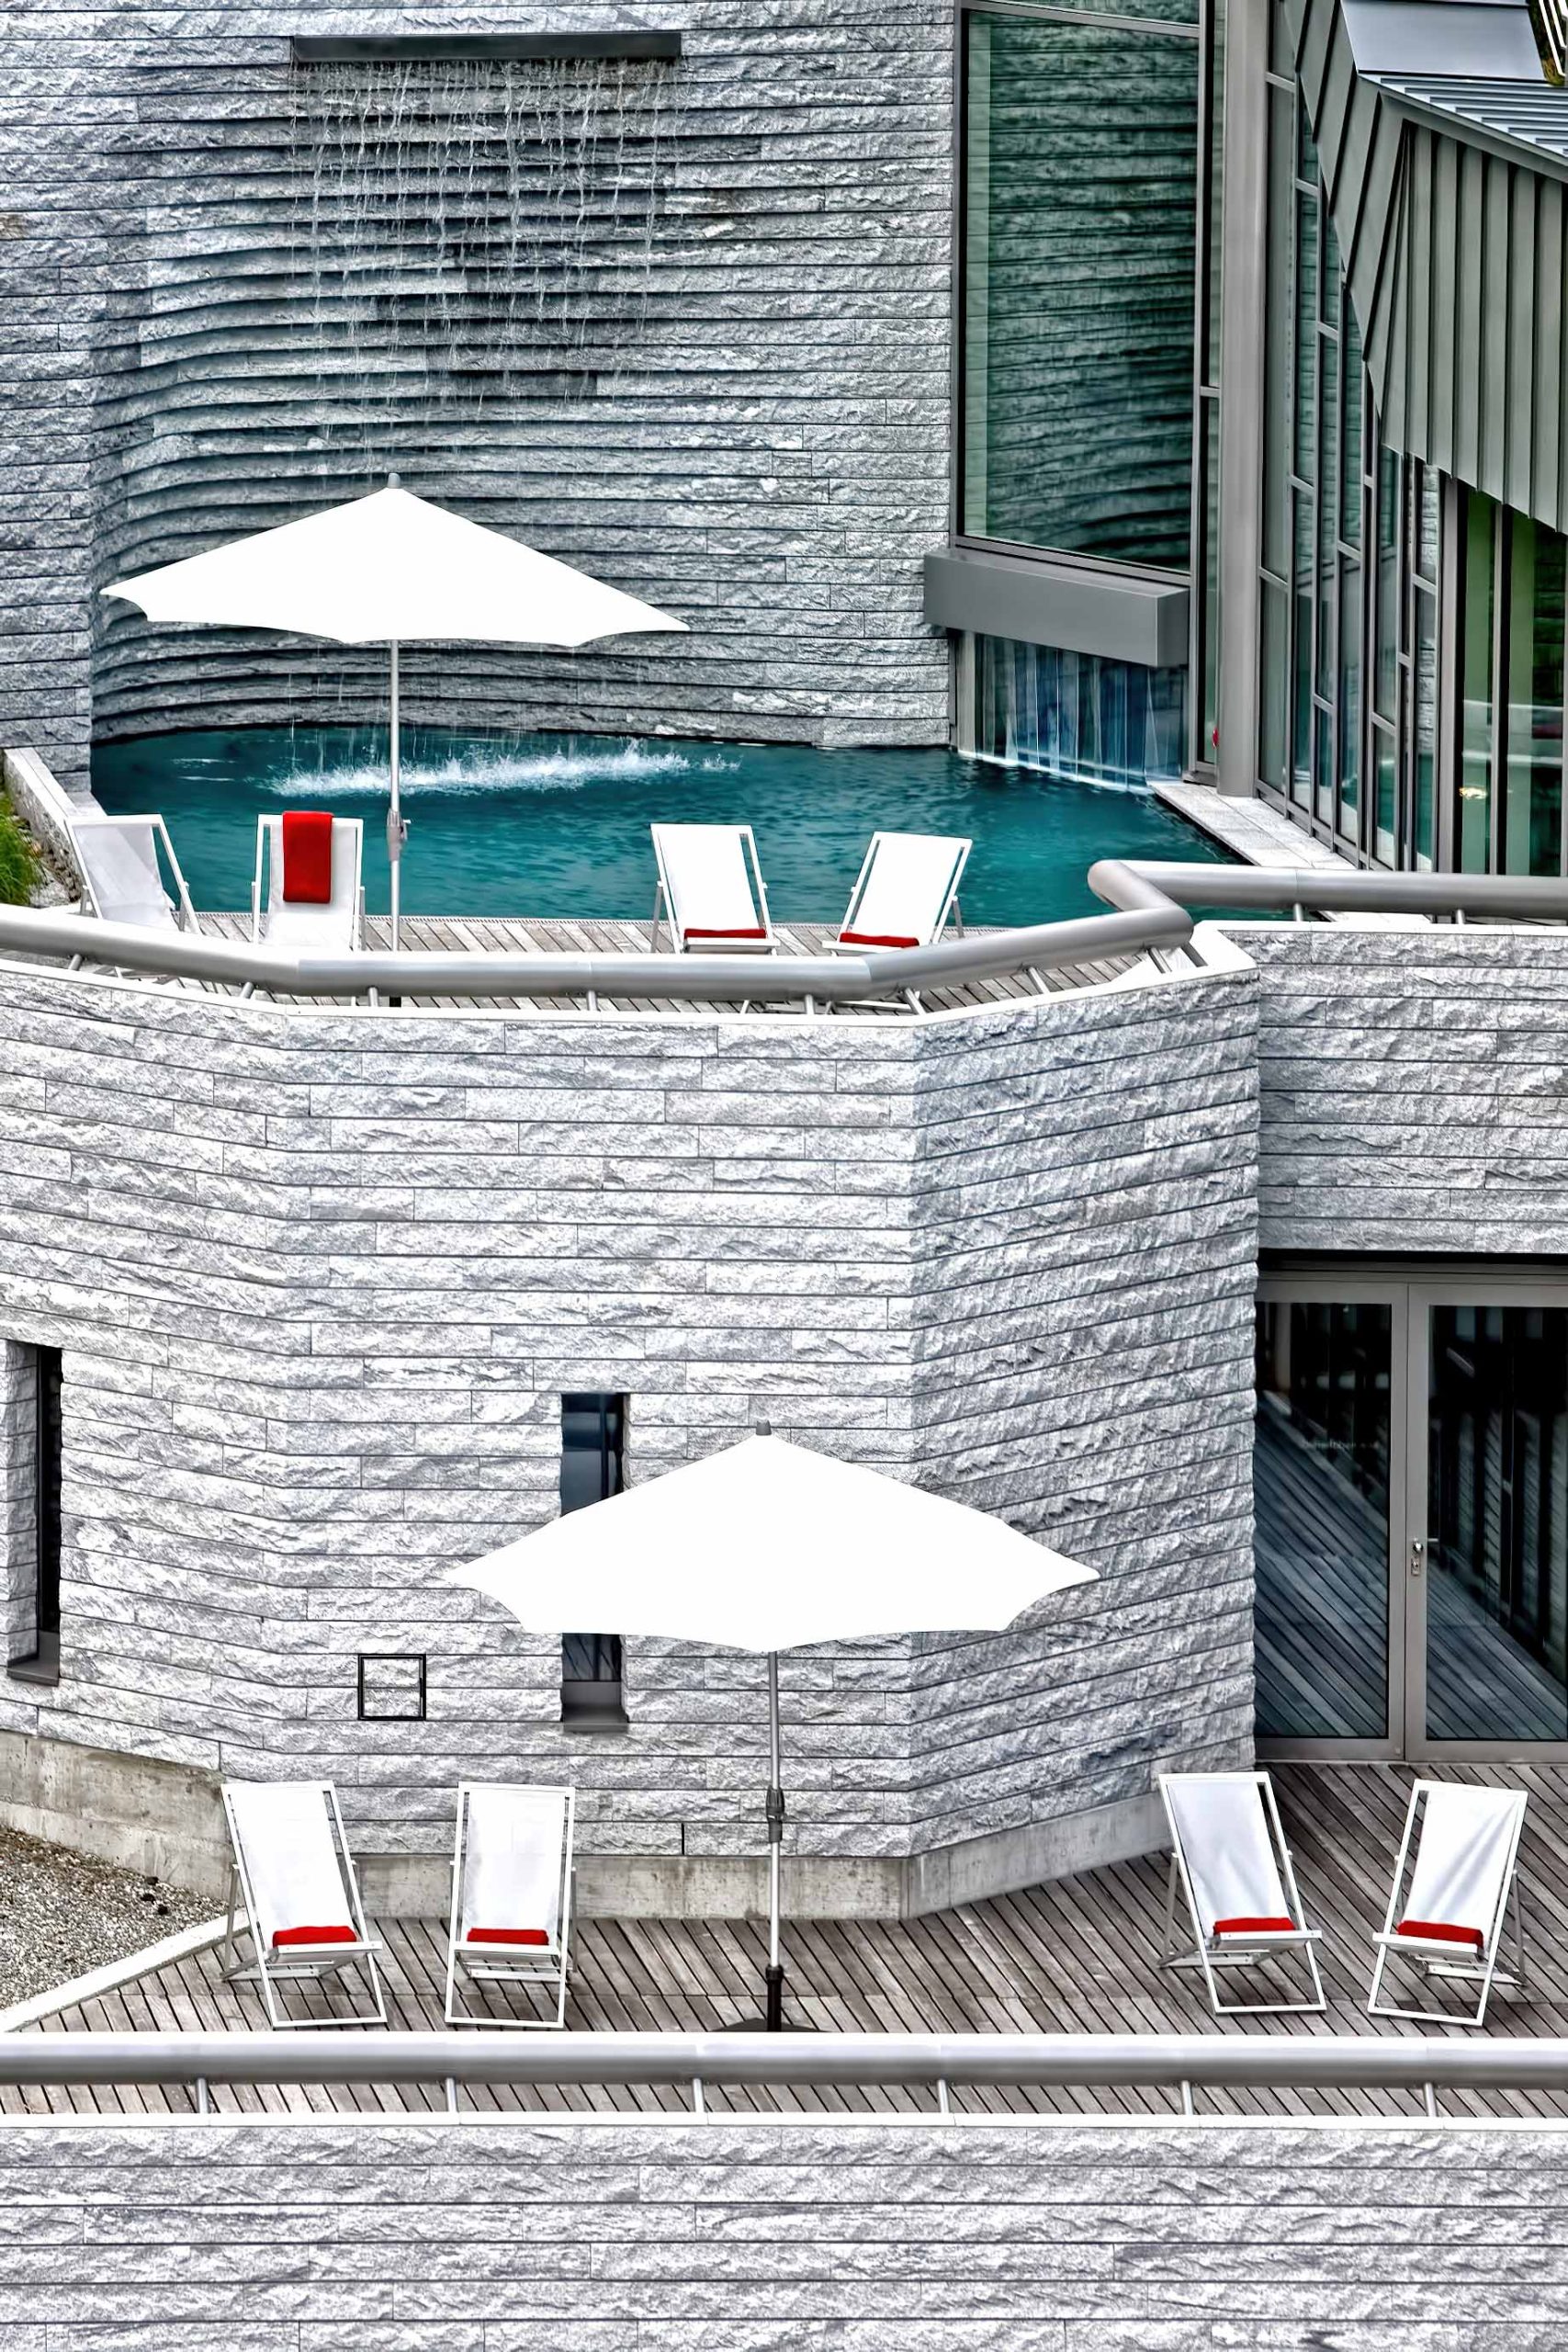 Tschuggen Grand Hotel – Arosa, Switzerland – Outdoor Pool Deck